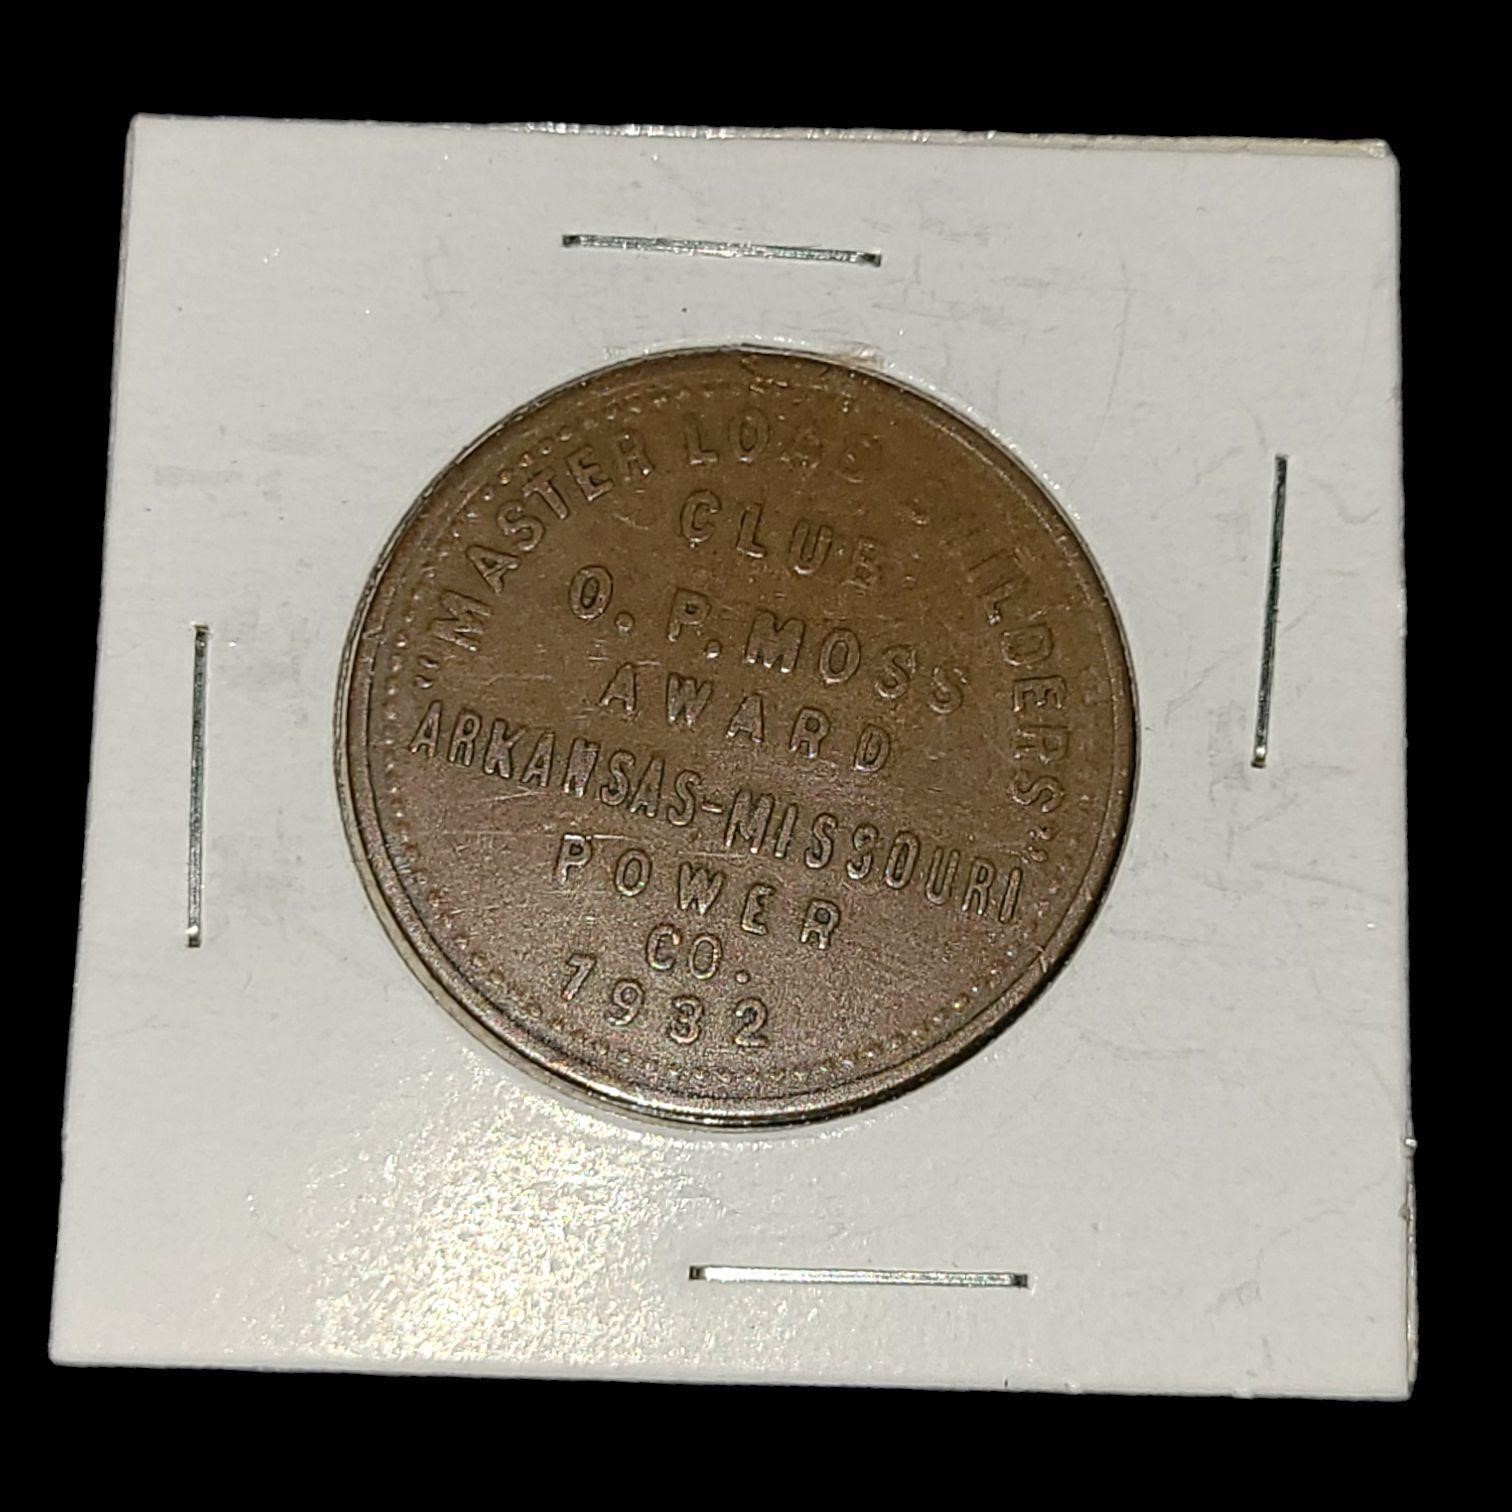 1932 Moss Award Arkansas-Missouri Power Company